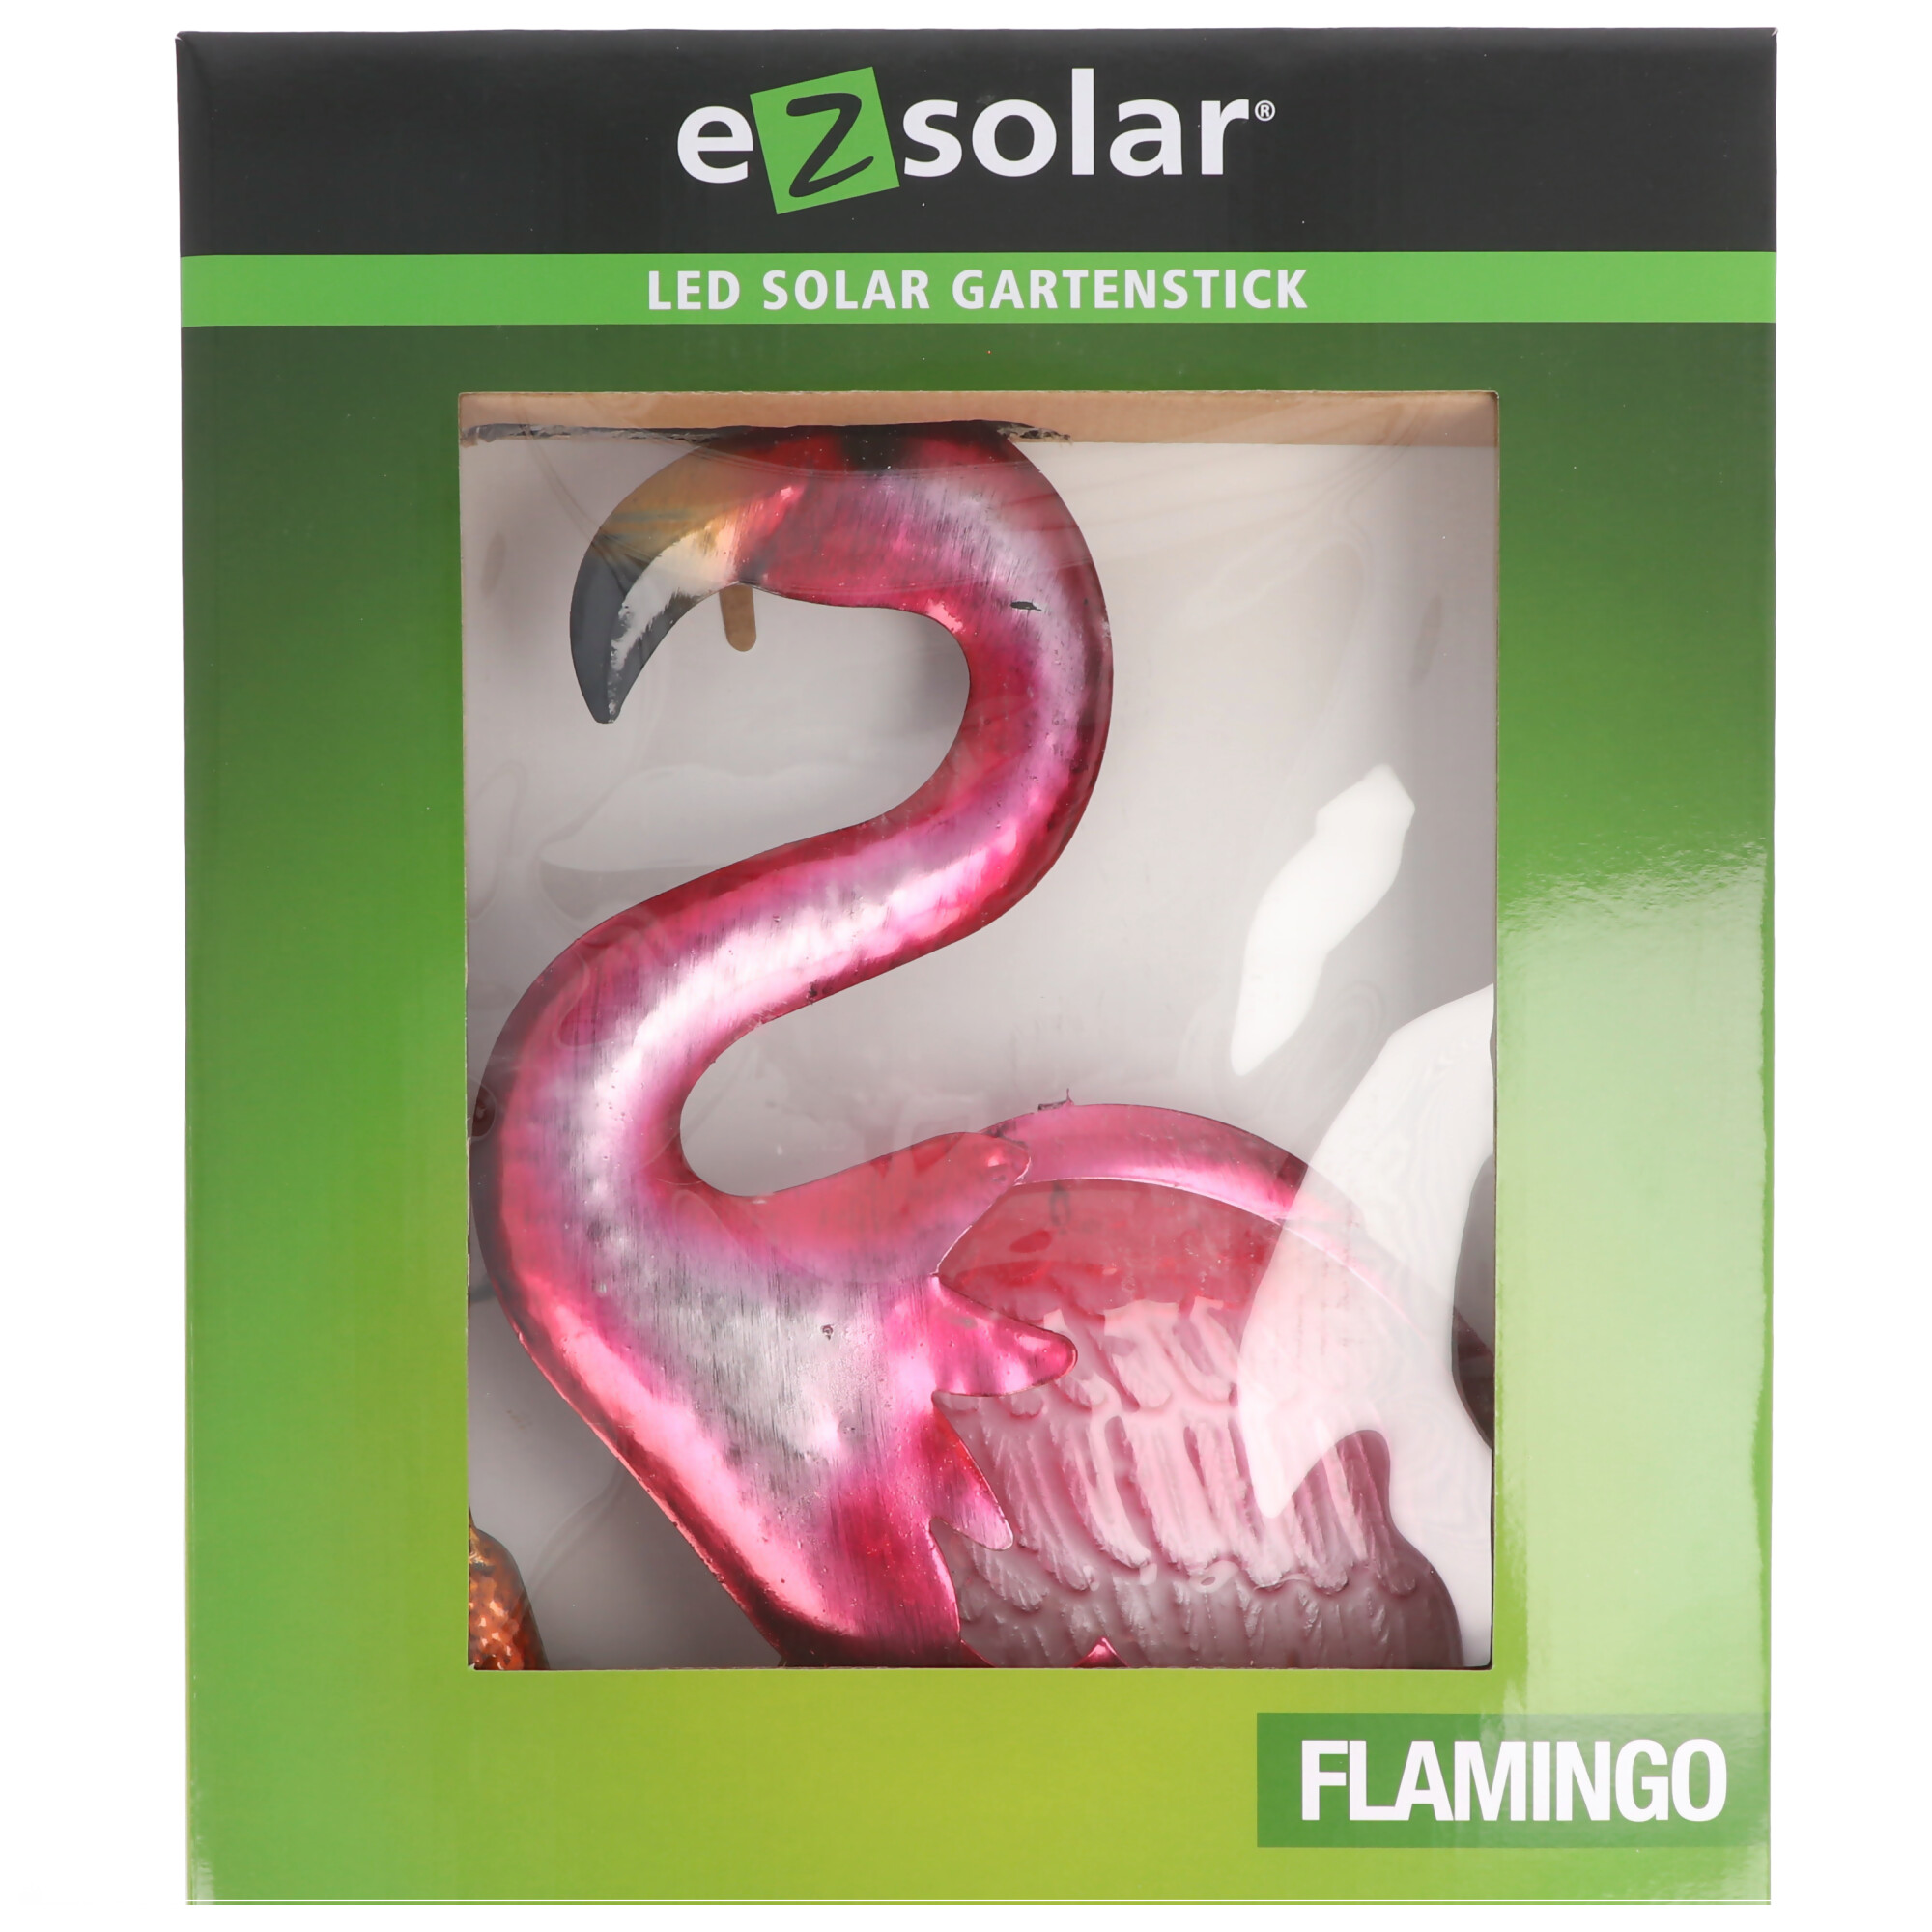 LED-Flamingo bunte Version mit einer weissen LED bis zu 8 Stunden Leuchtdauer, GL1044EZ, 0884620059774